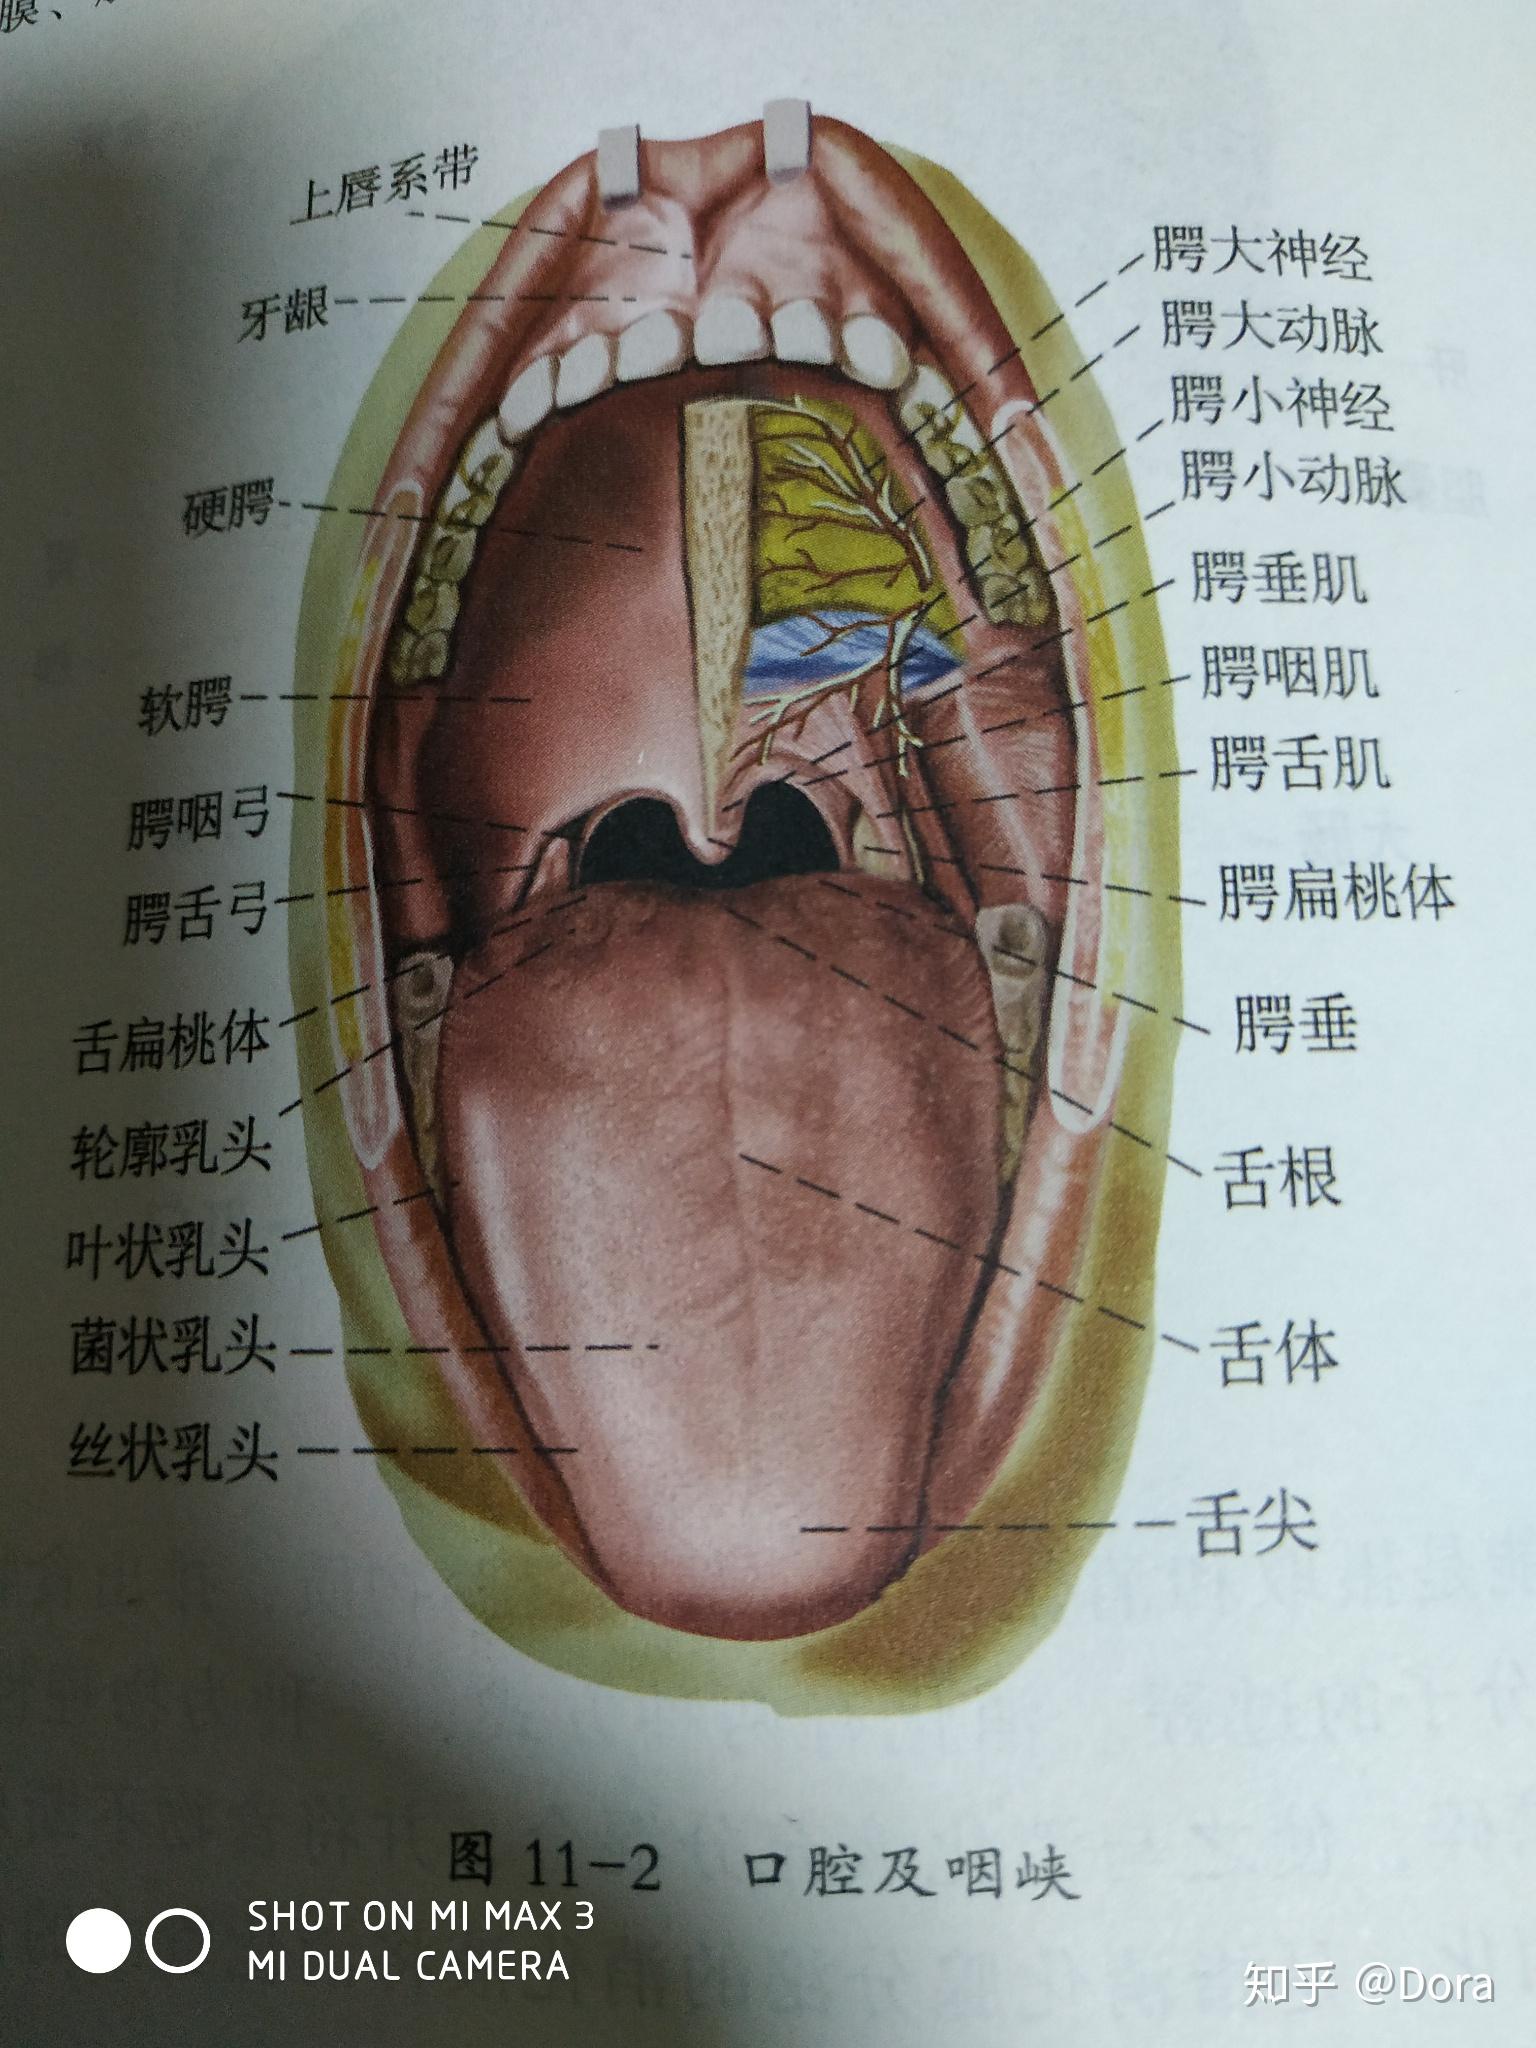 口腔向前经口裂通向外界,向后经咽峡与咽相通